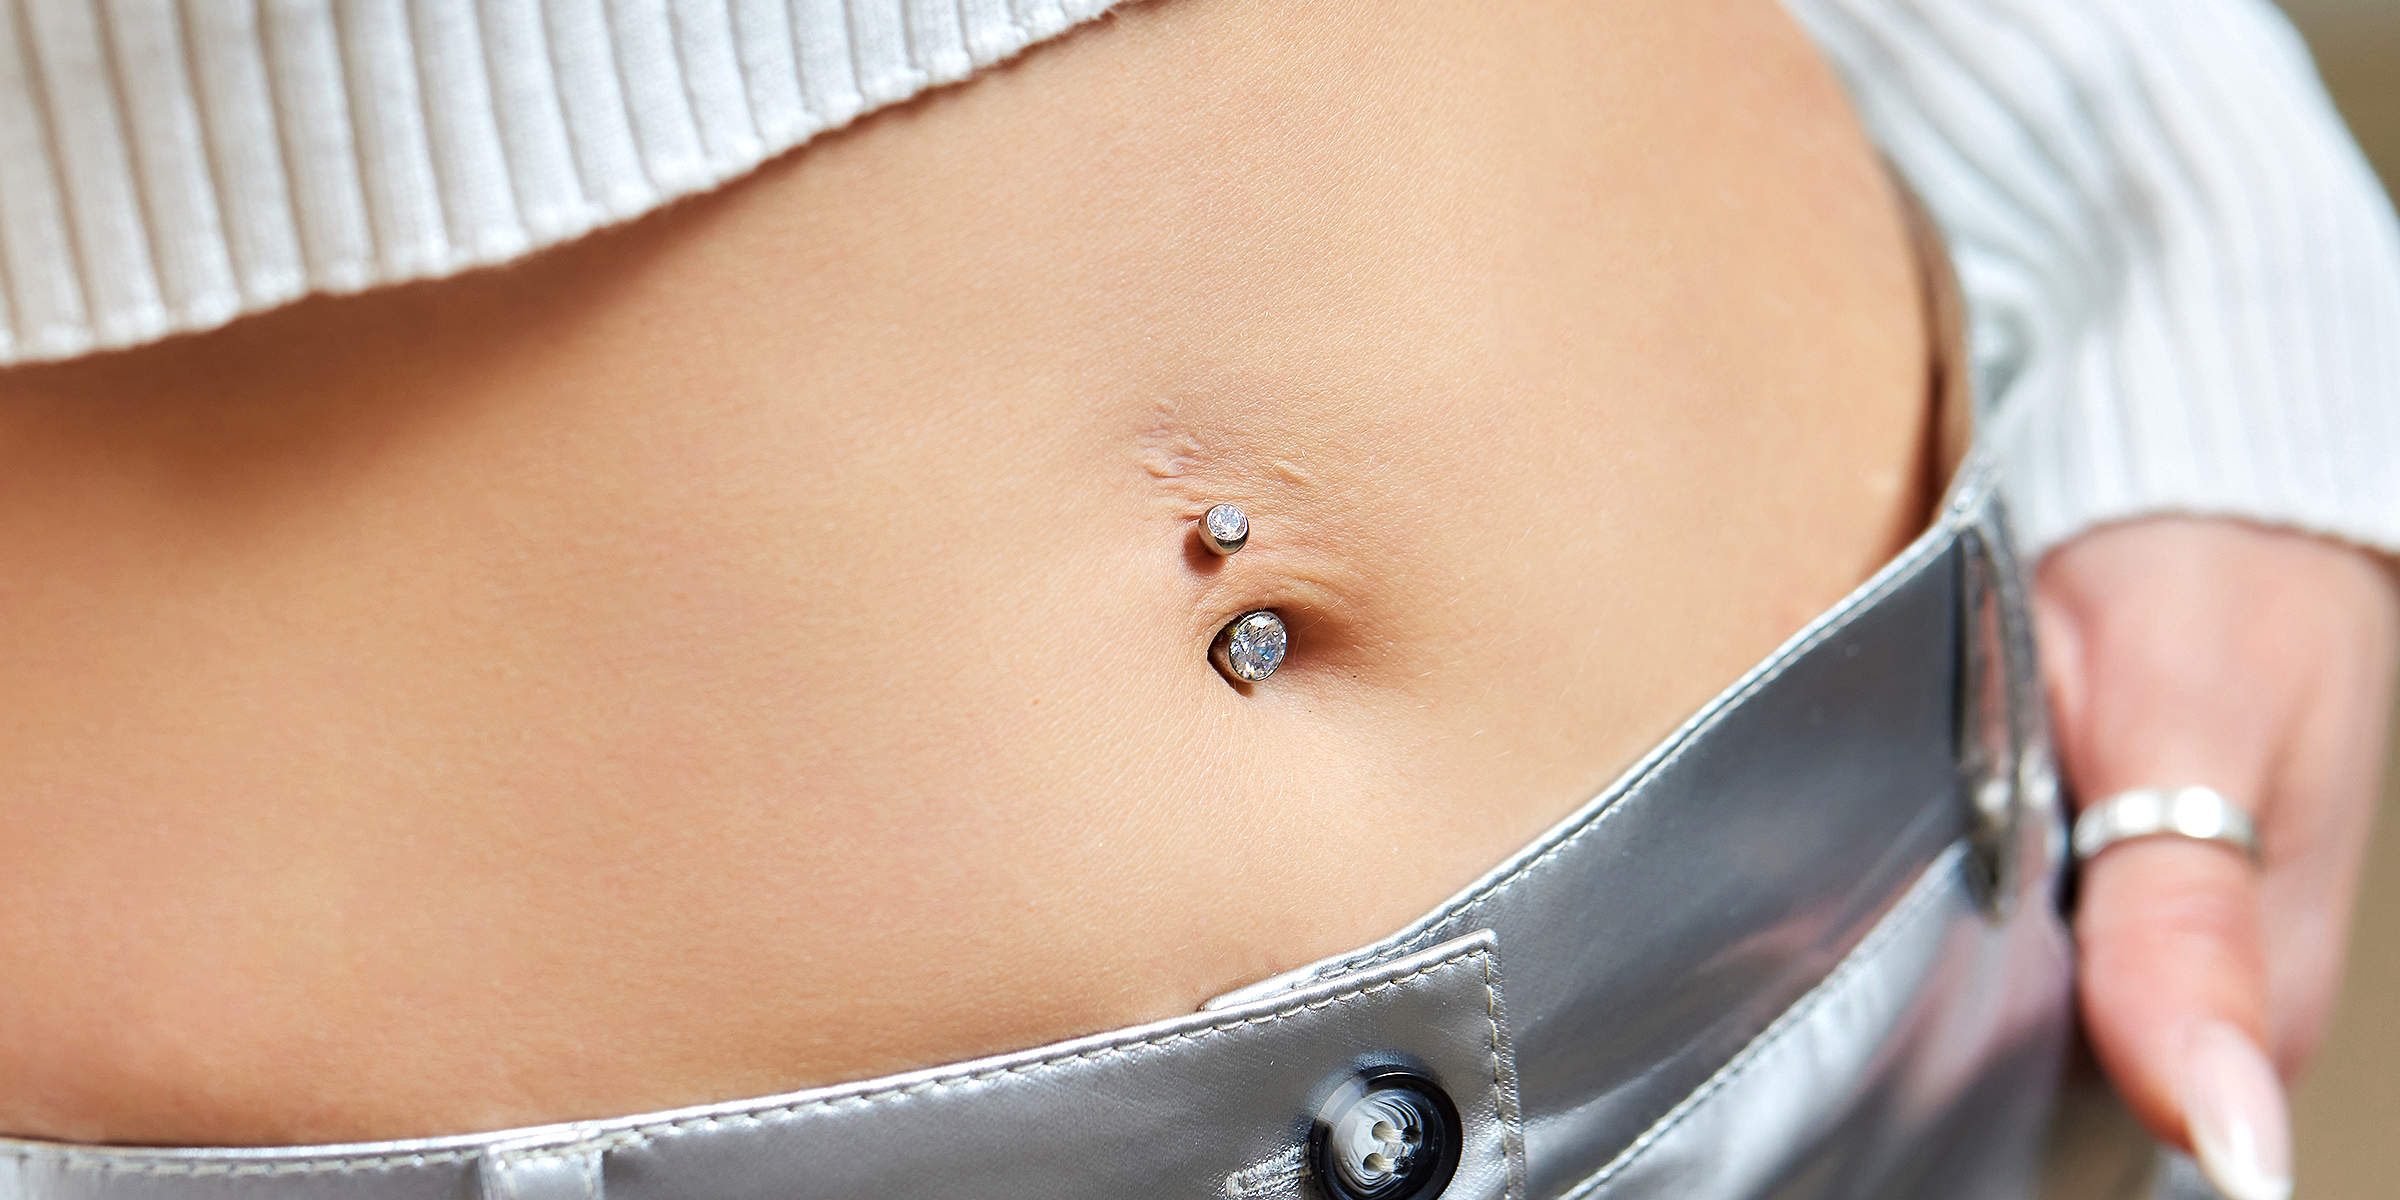 Belly piercing | Source: Shutterstock